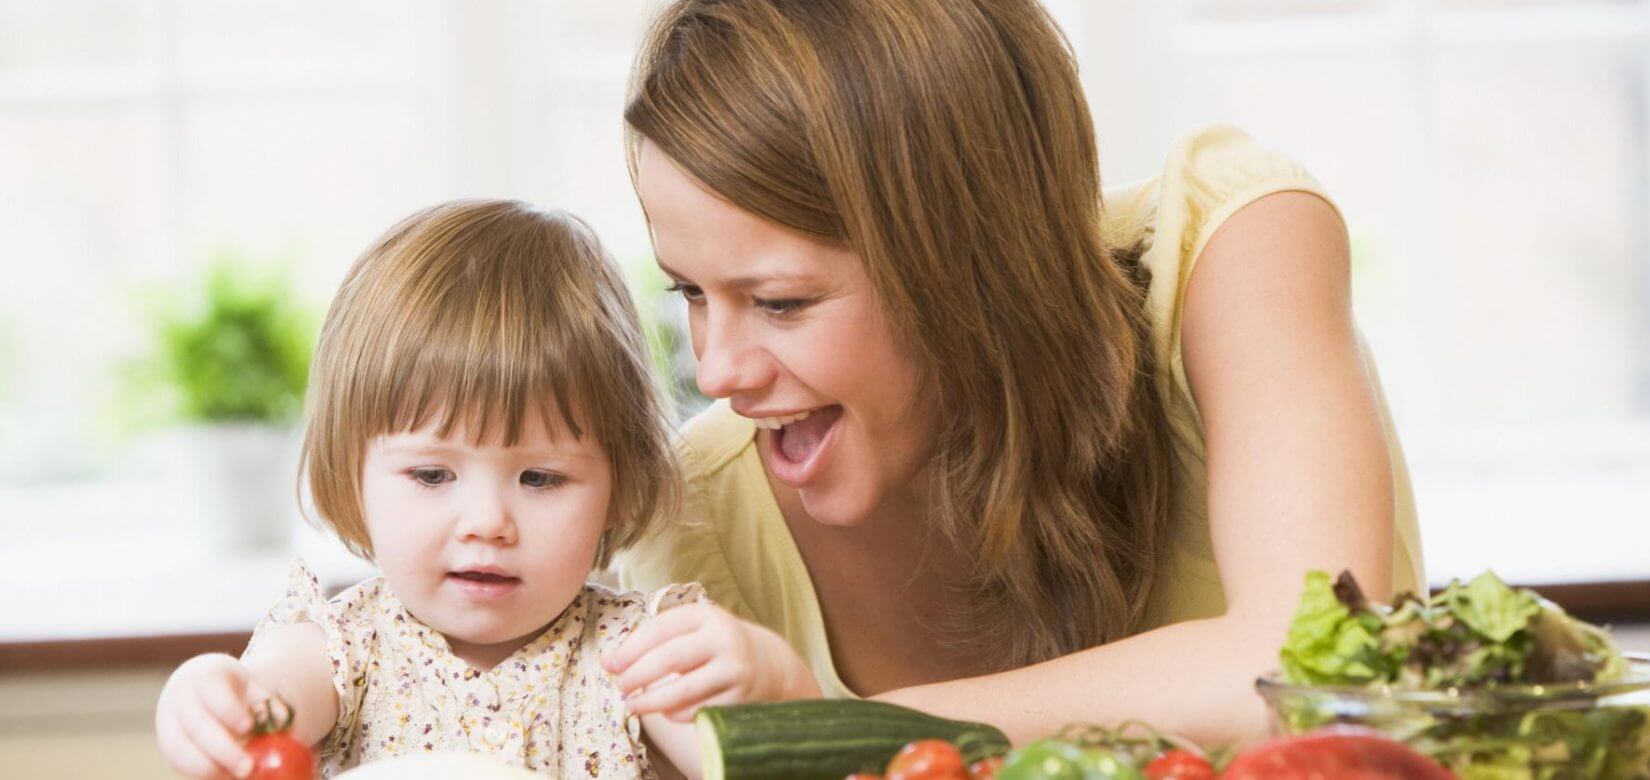 Διατροφή στο Σακχαρώδη Διαβήτη Τύπου 1 για παιδιά και εφήβους - Συμβουλές από την παιδοδιαιτολόγο Ελένη Κουή